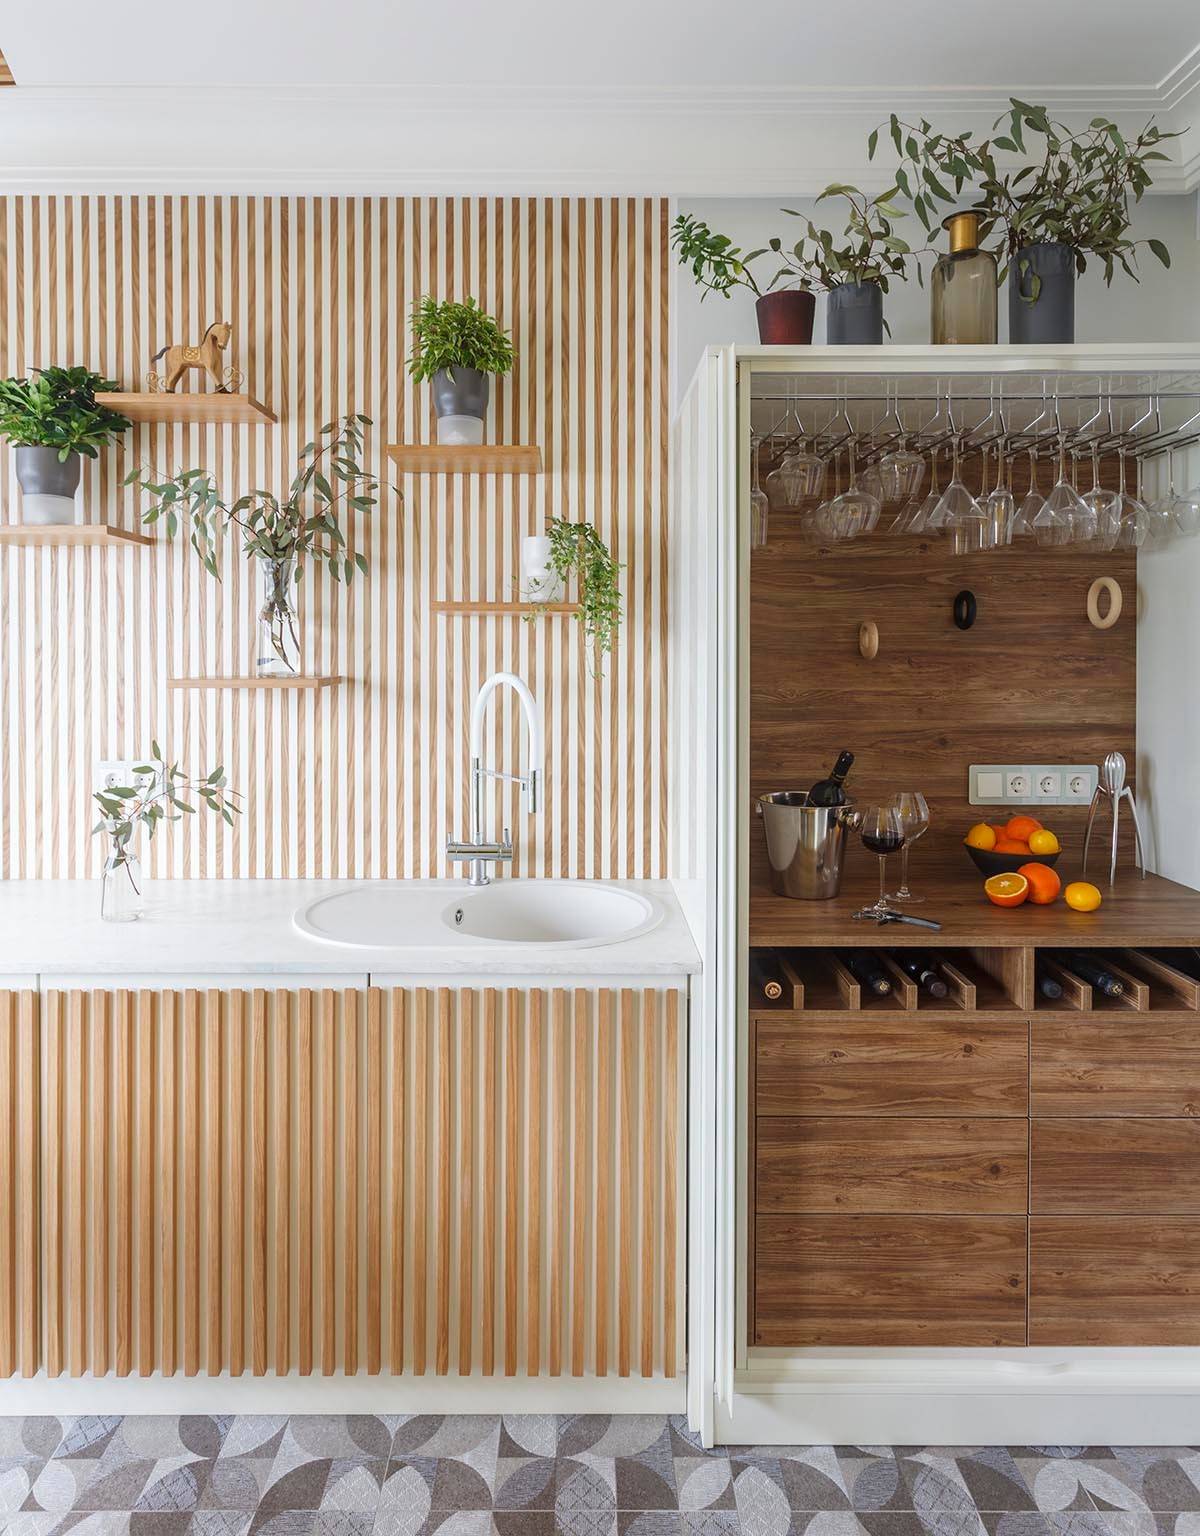 рейки в интерьере кухни на стене